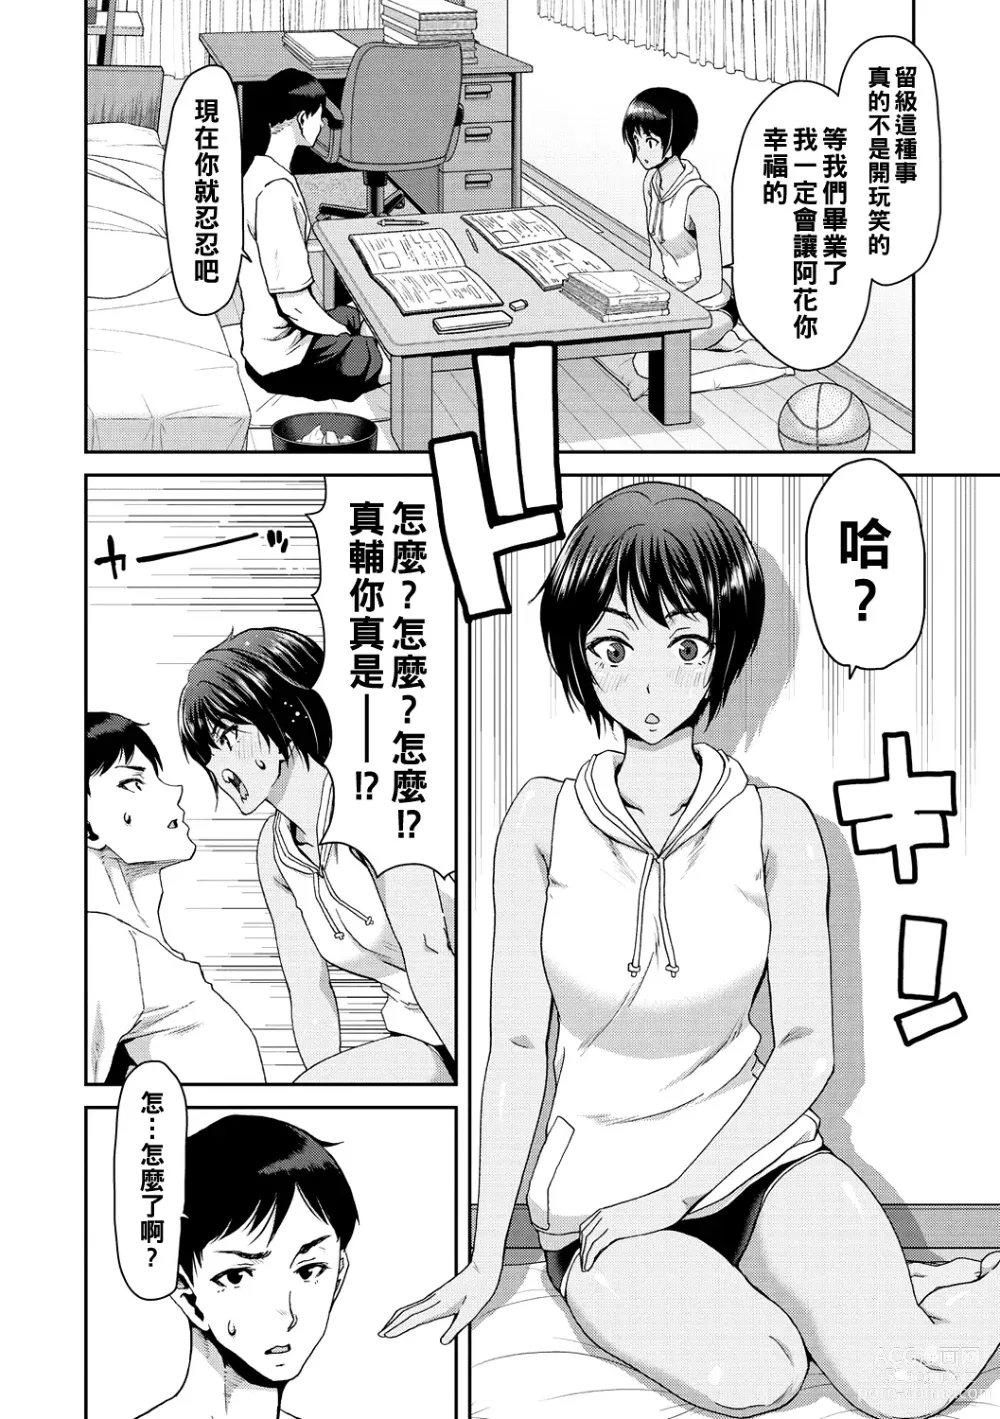 Page 134 of manga Shiyokka Hametsu SEX